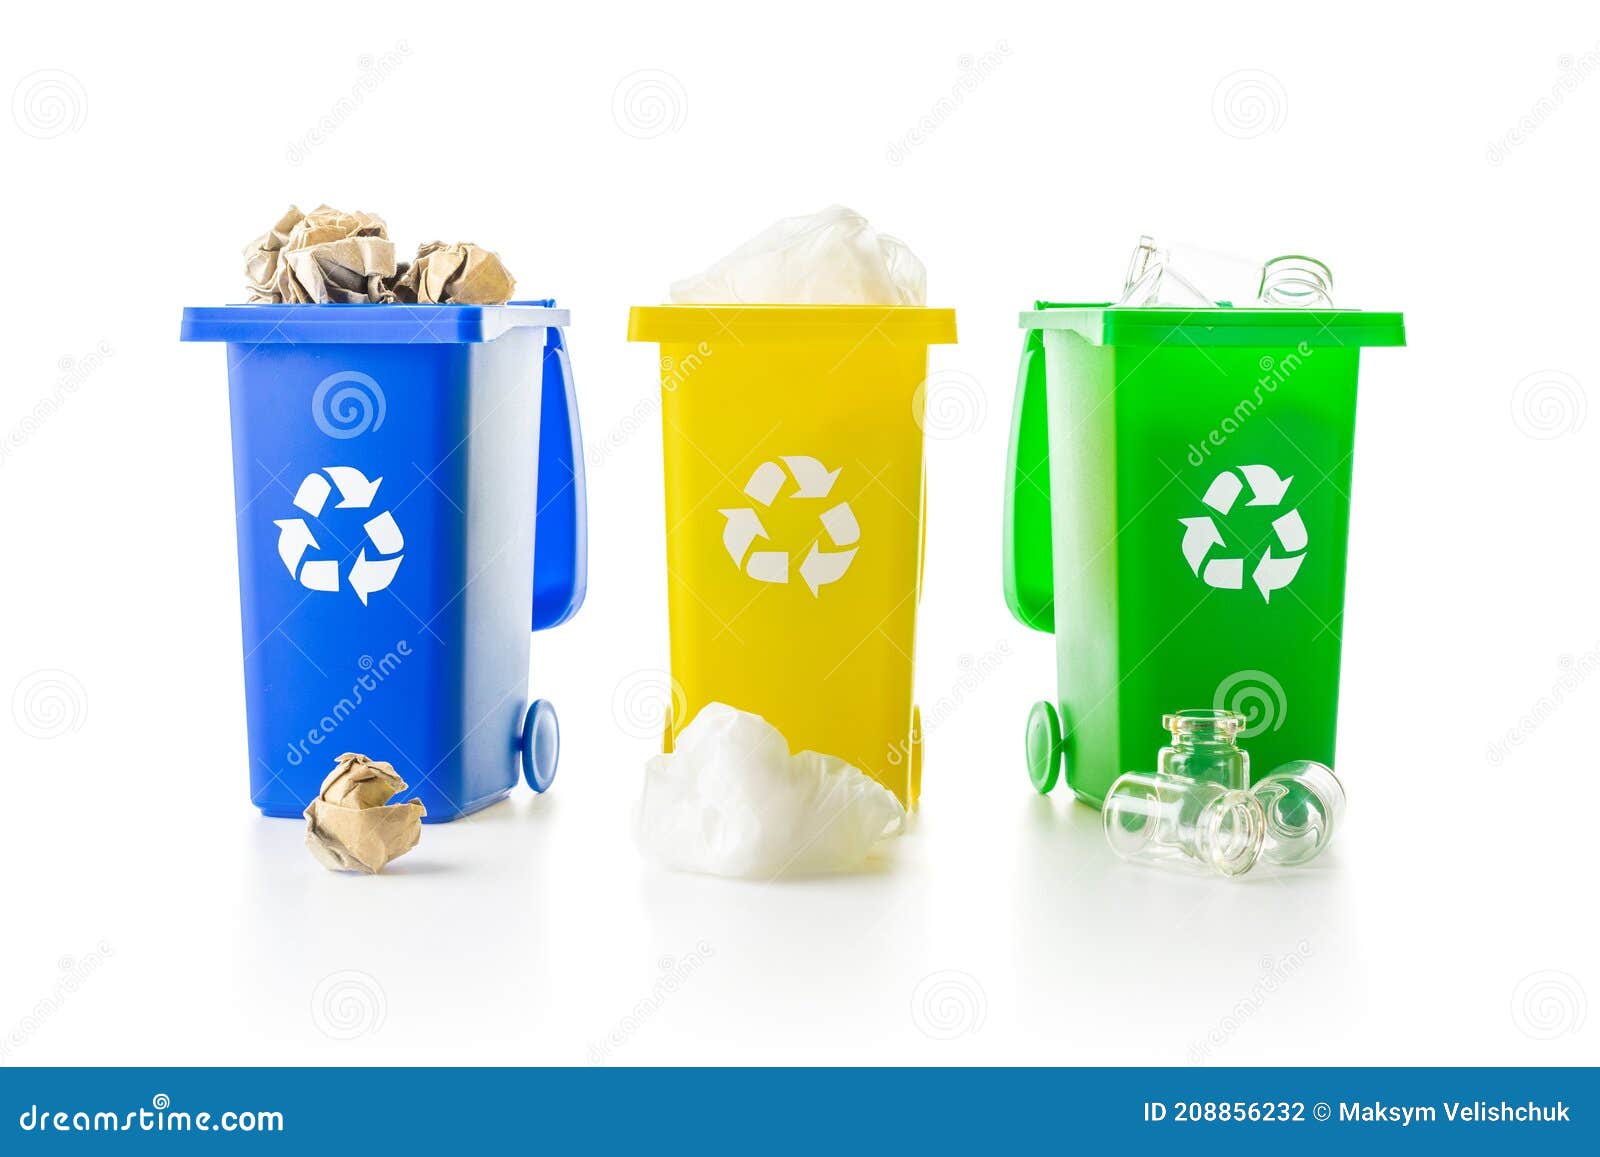 Contenedores de reciclaje amarillo verde y azul con símbolo de reciclaje  aislado sobre fondo blanco.